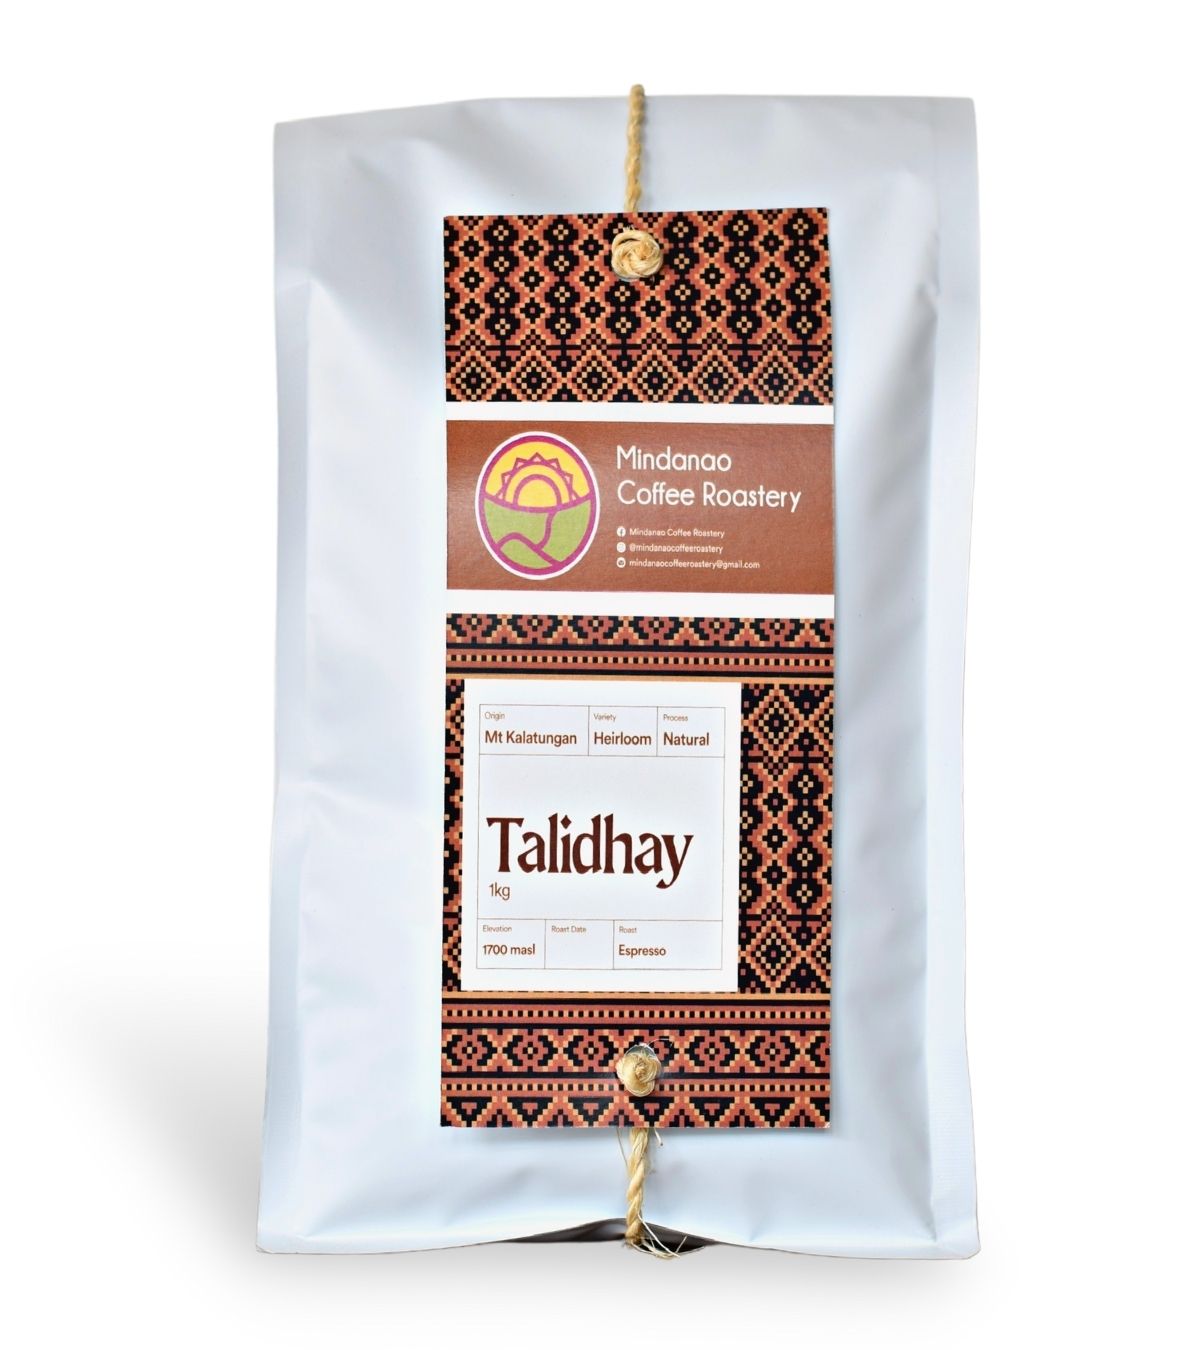 Talidhay - Mindanao Coffee Roastery